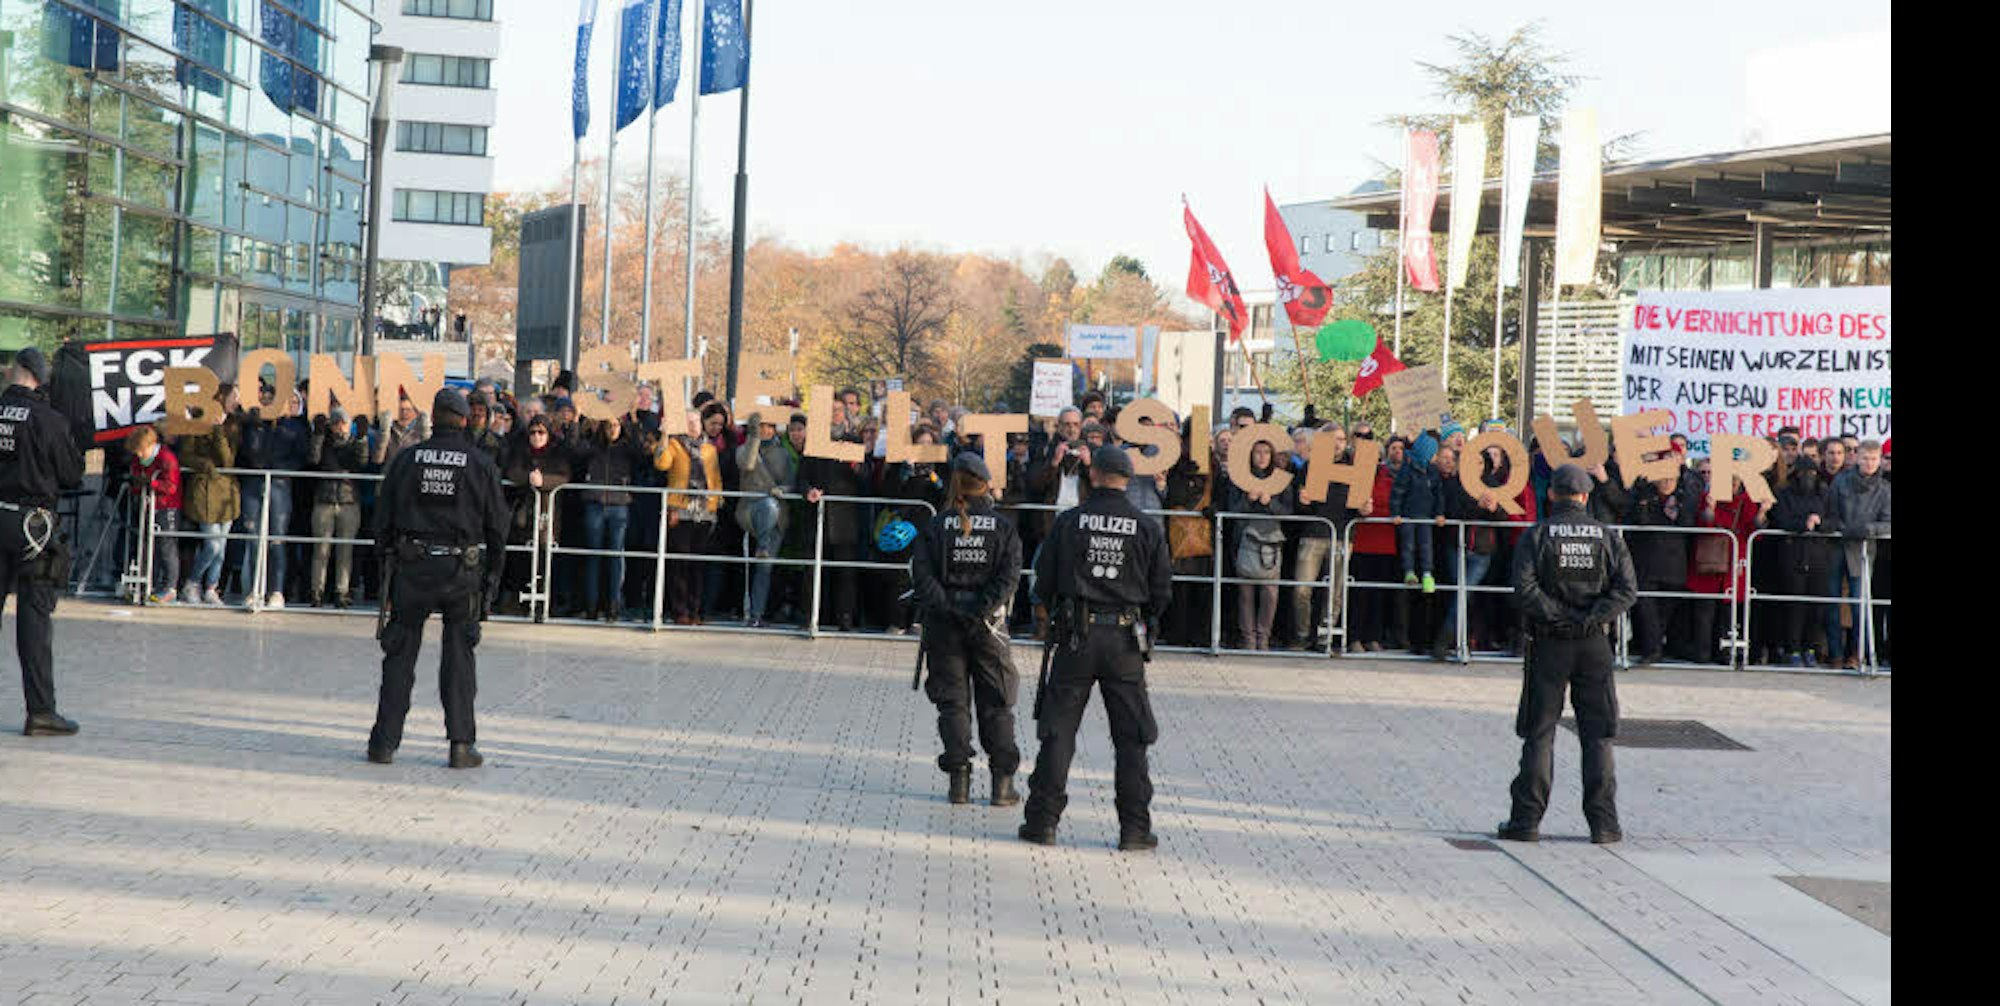 Bonn stellt sich quer: Viele waren zum Kongresszentrum gekommen, um gegen die Identitäre Bewegung zu protestieren.